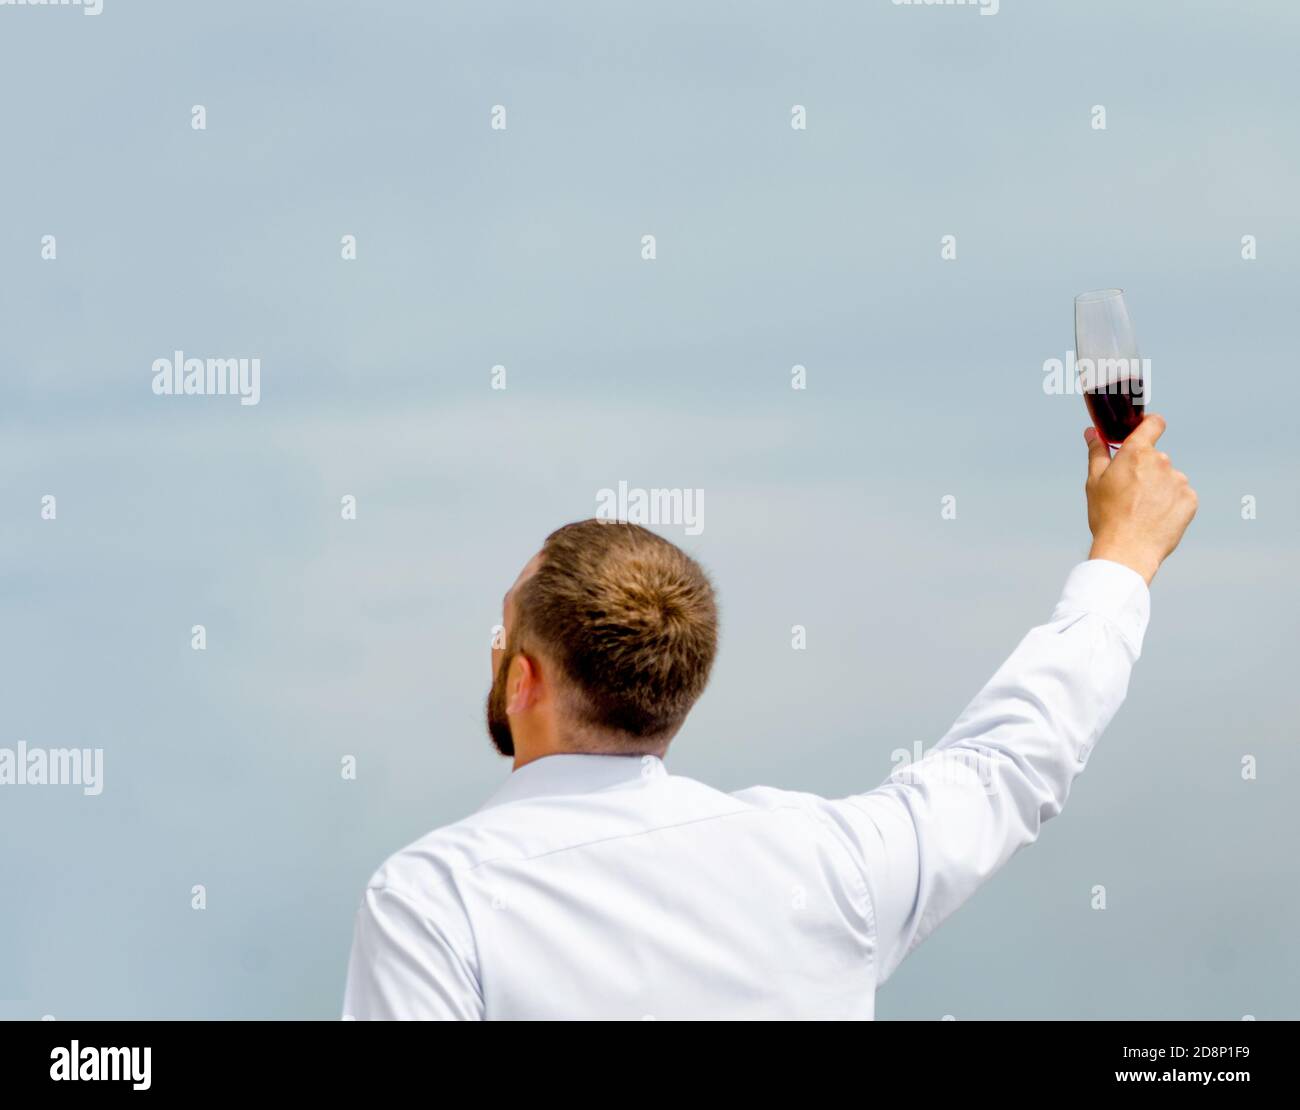 employé de bureau dans une chemise blanche avec un verre de vin dans une main levée Banque D'Images